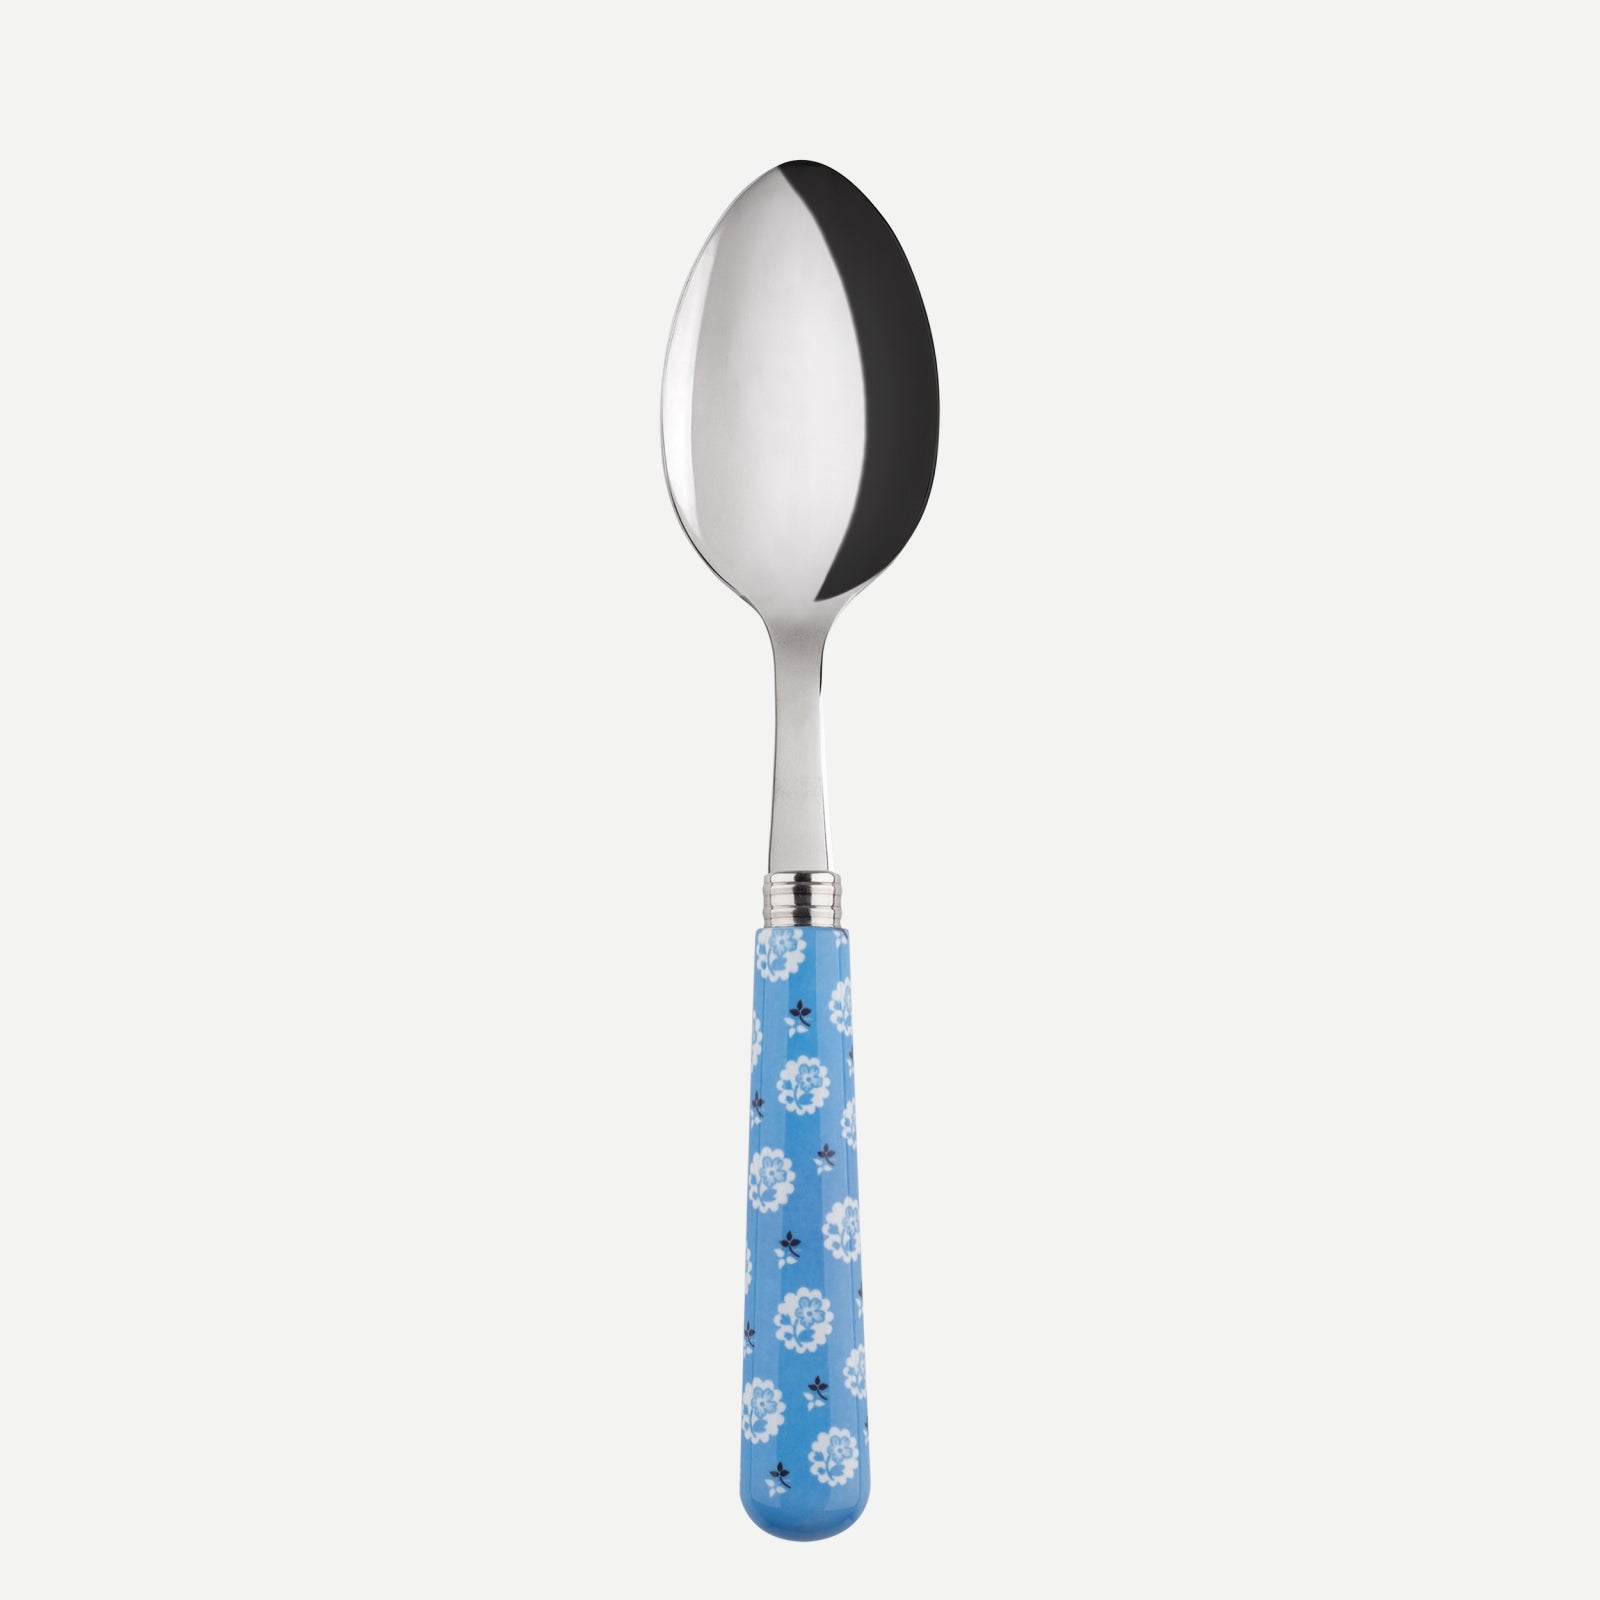 Soup spoon - Provencal - Light blue